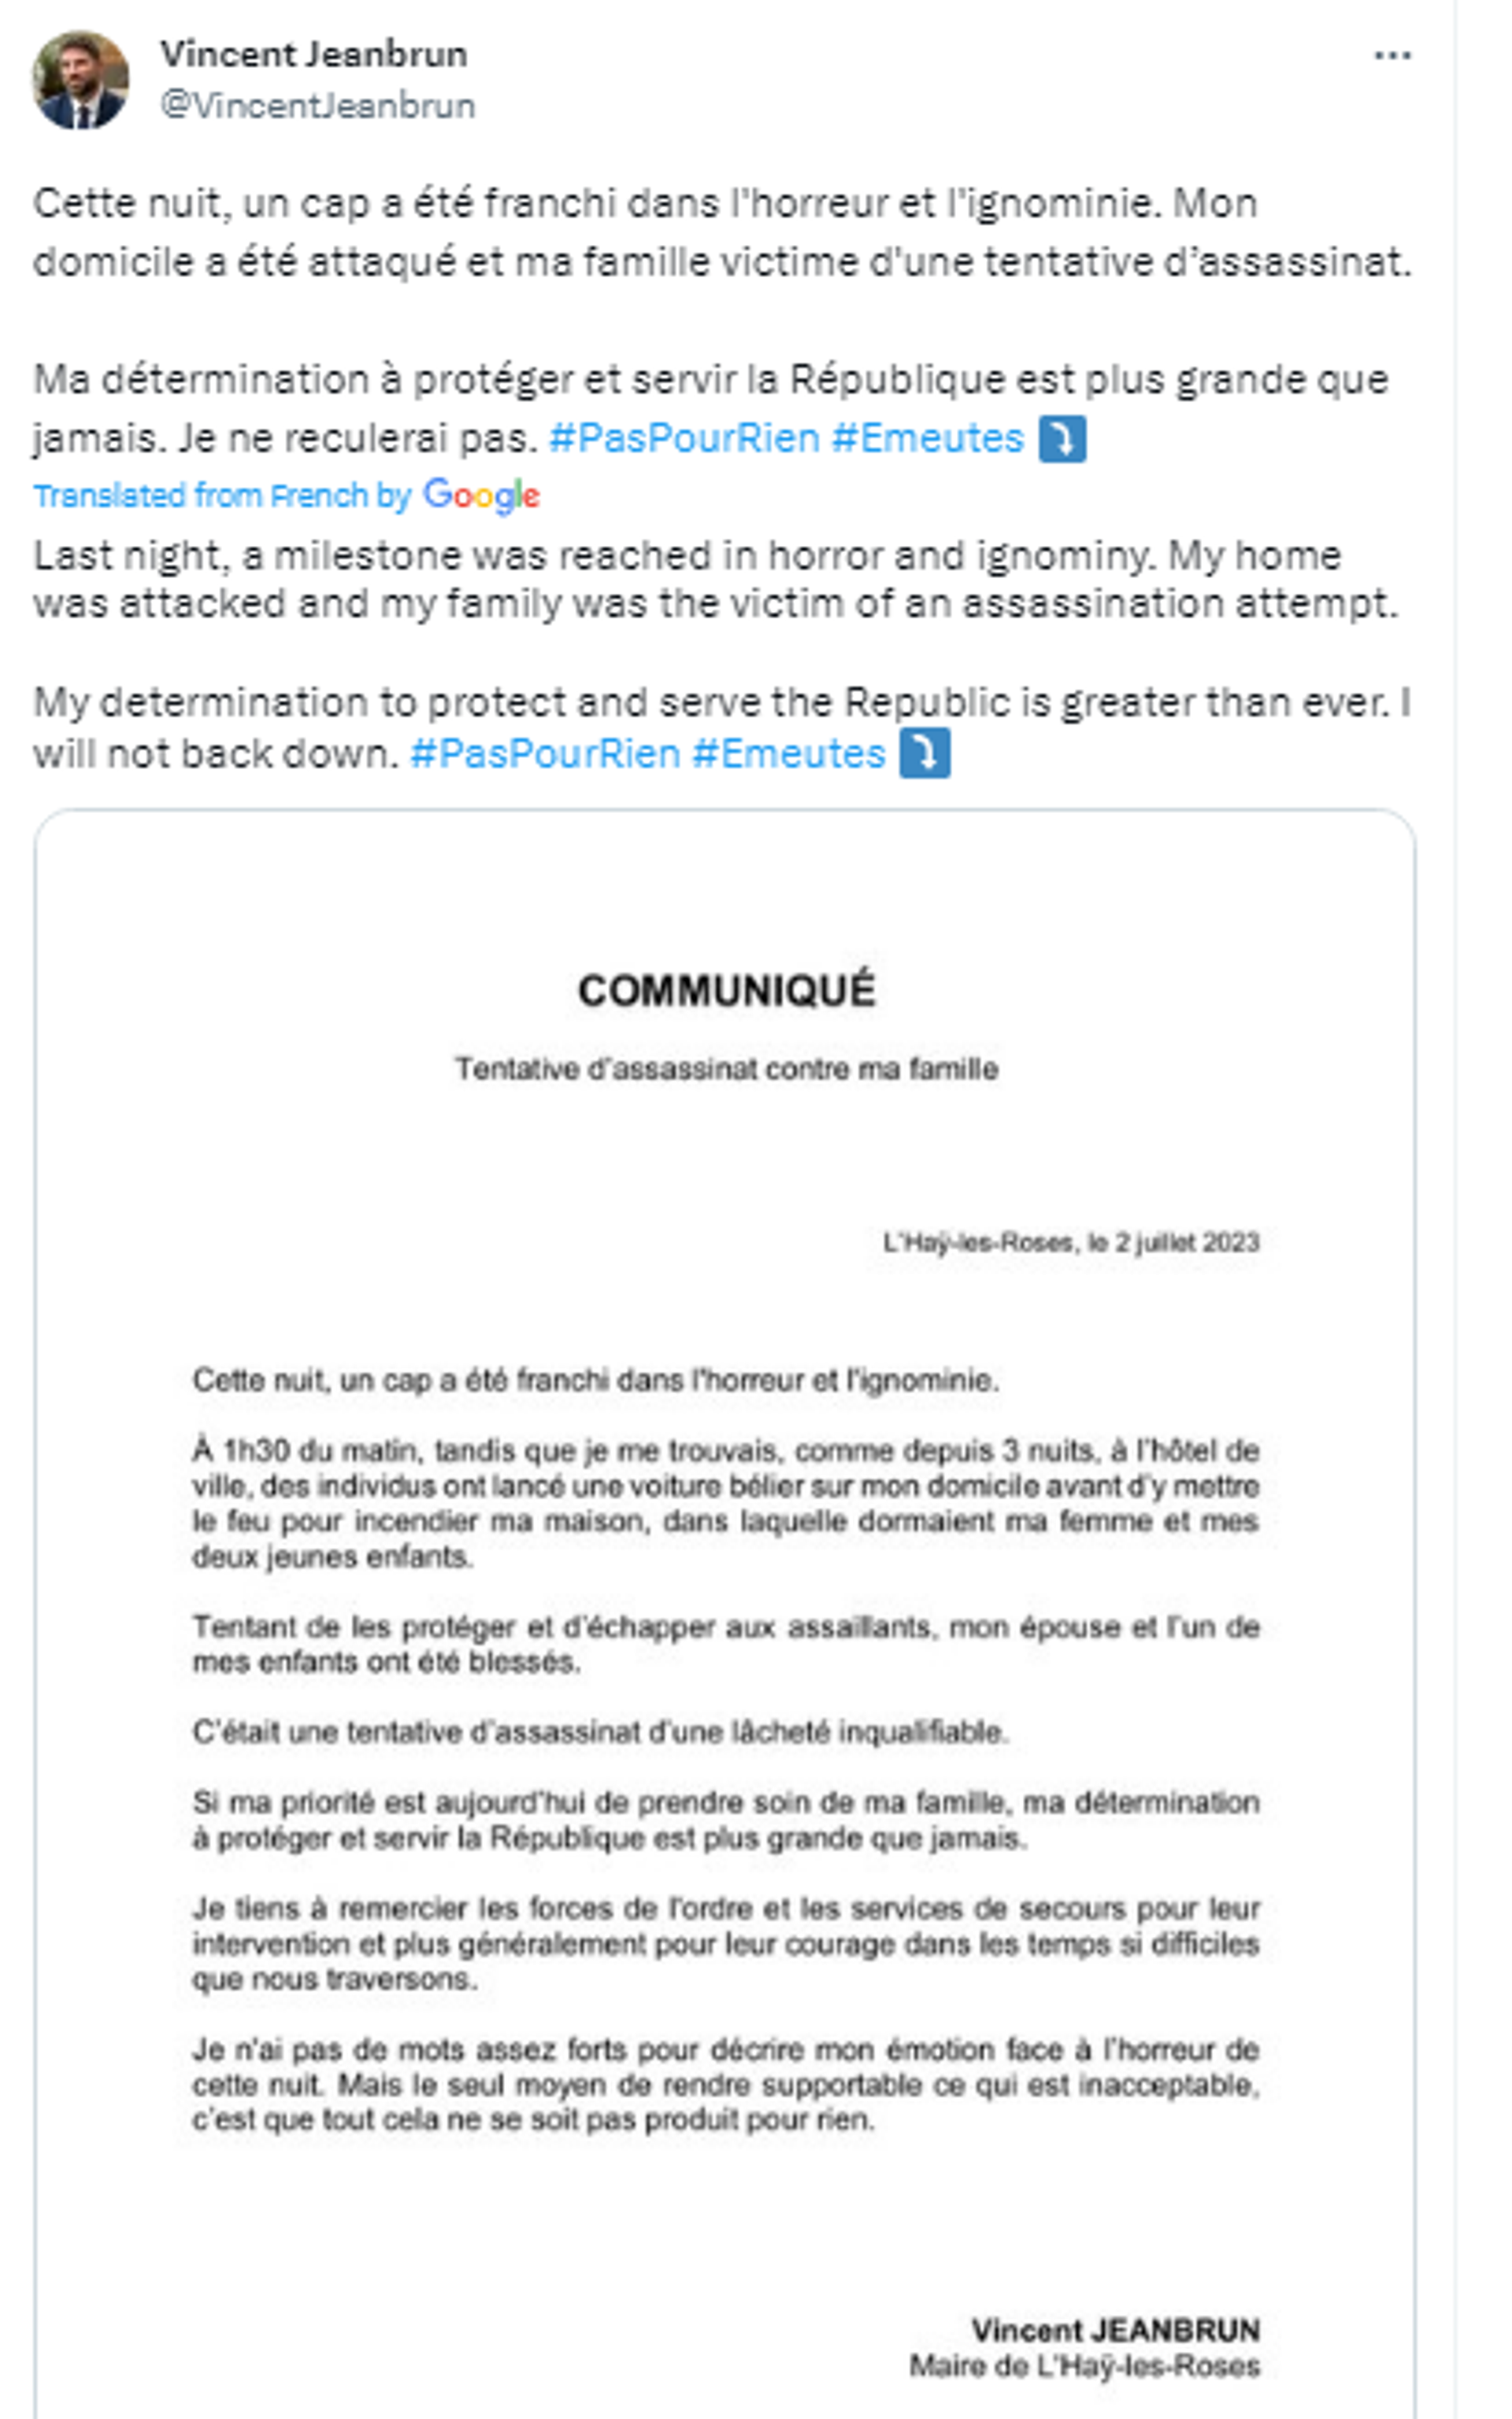 Screenshot of Twitter post by Vincent Jeanbrun, Mayor of L'Haÿ-les-Roses. - Sputnik International, 1920, 02.07.2023